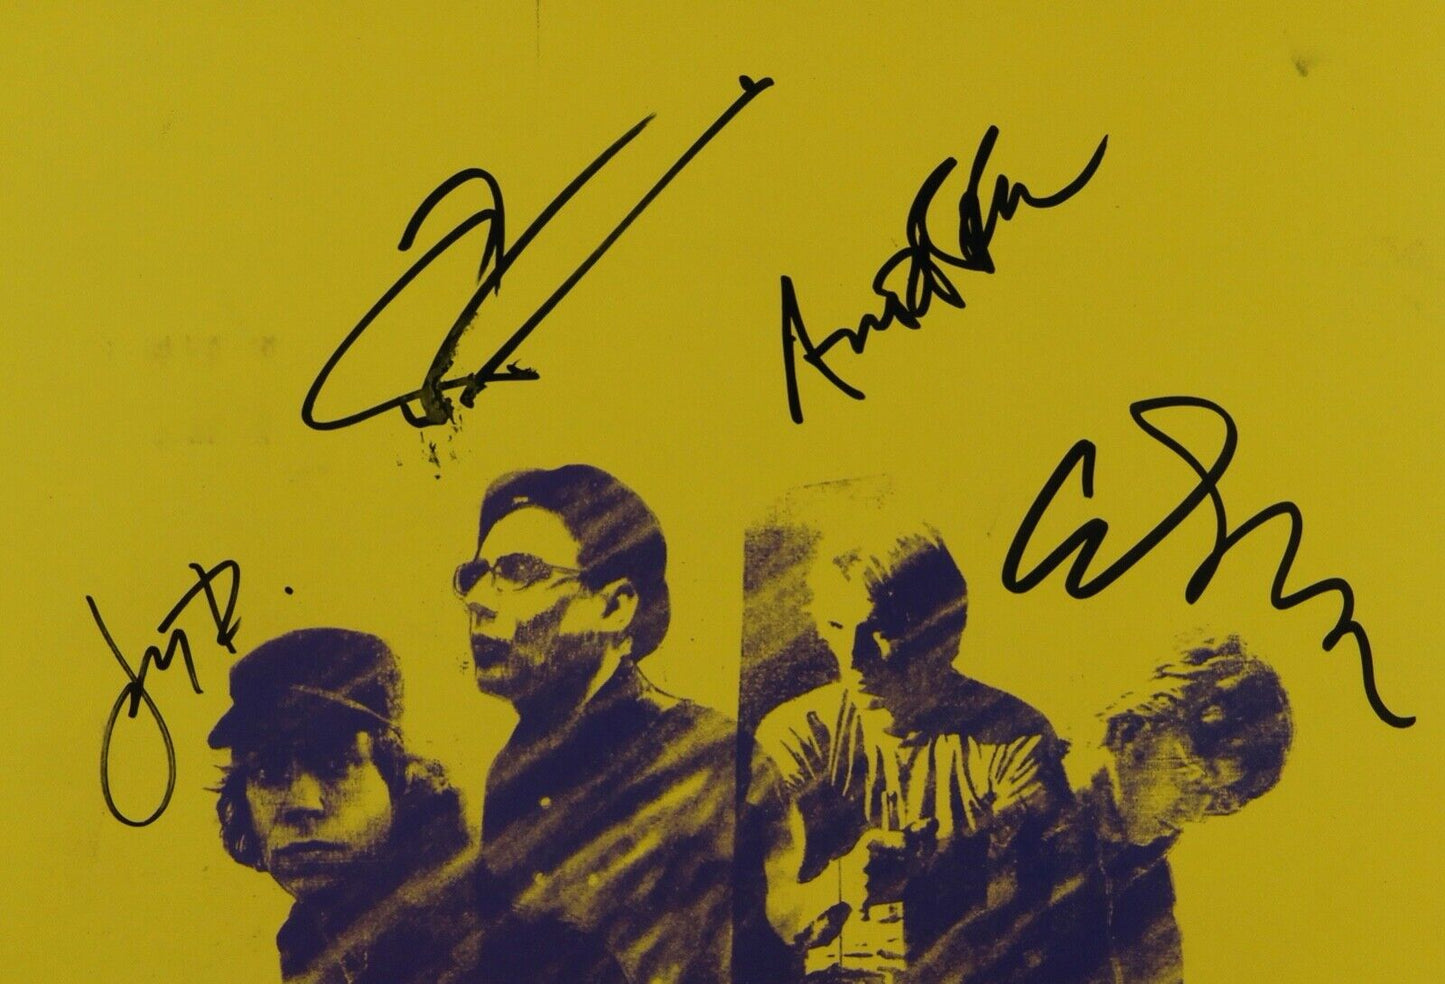 Sloan JSA Signed Autograph Album Record Vinyl The Double Cross